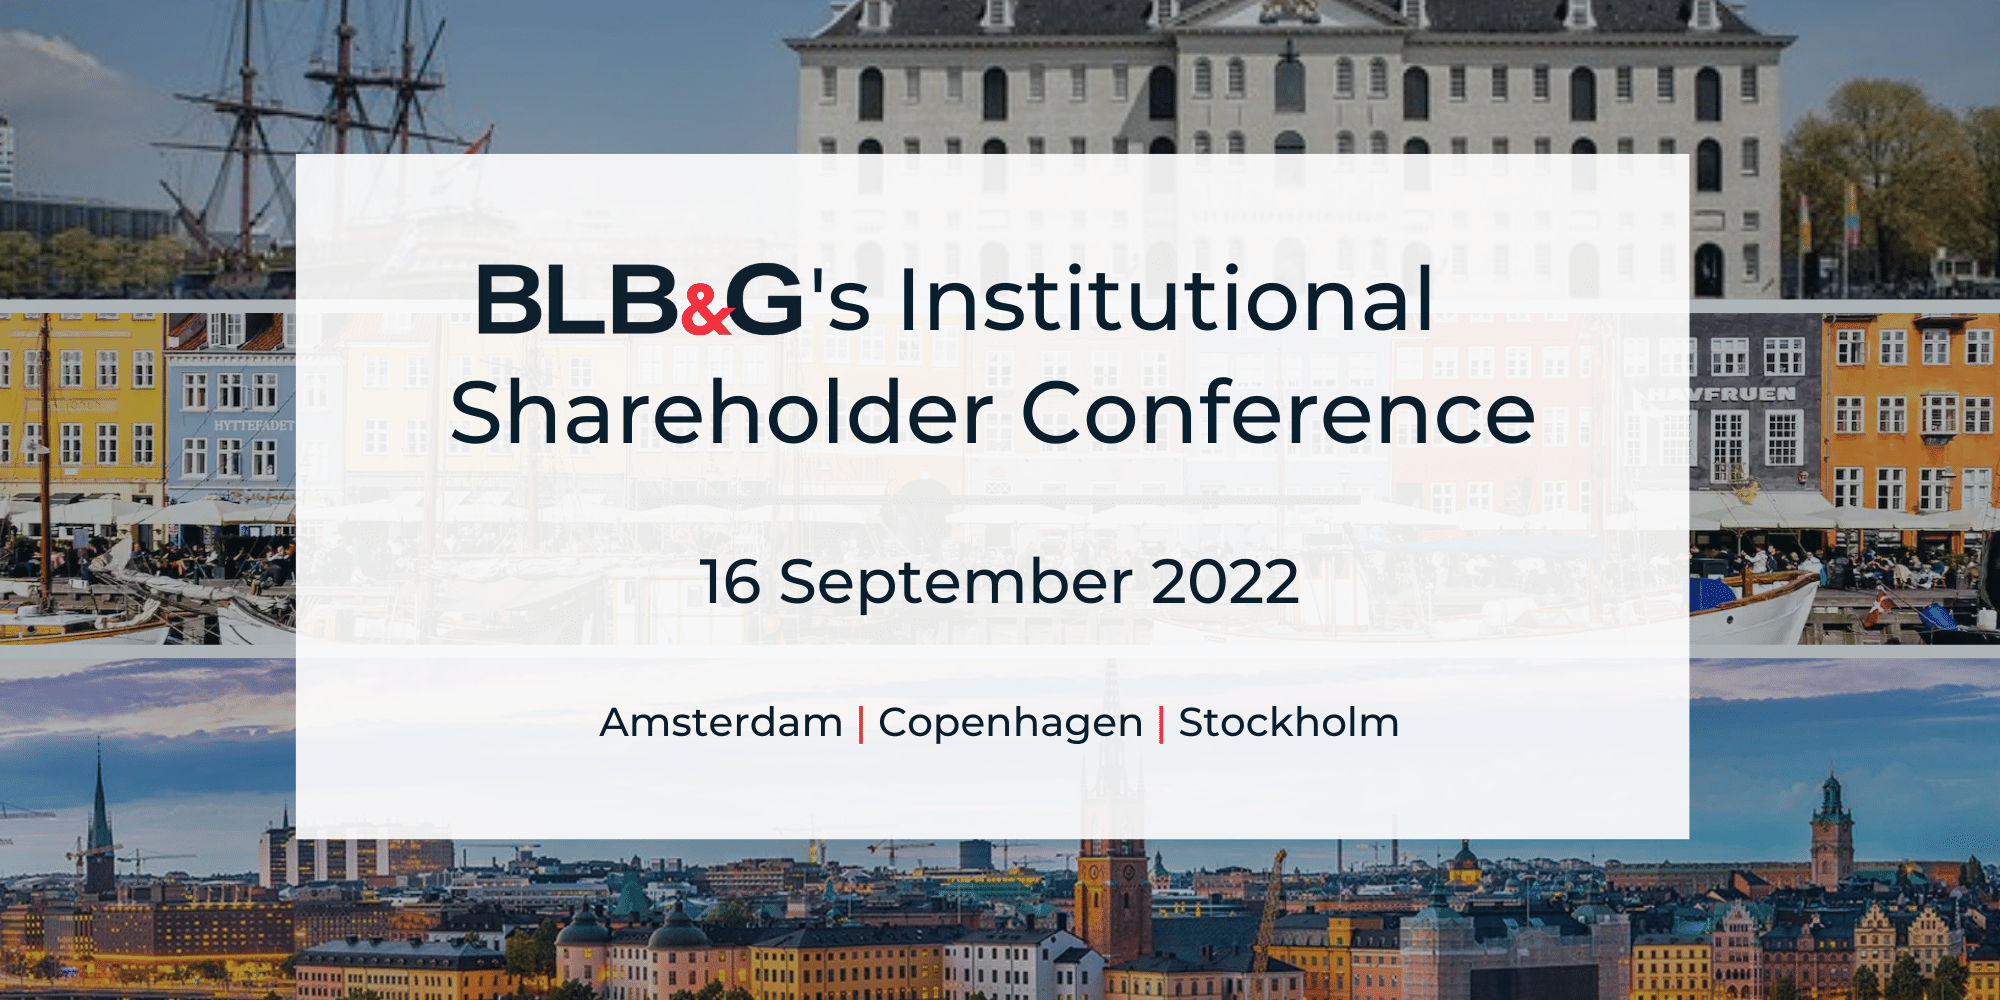 BLB&G Hosts Institutional Shareholder Conference in Amsterdam, Copenhagen, & Stockholm on September 16, 2022